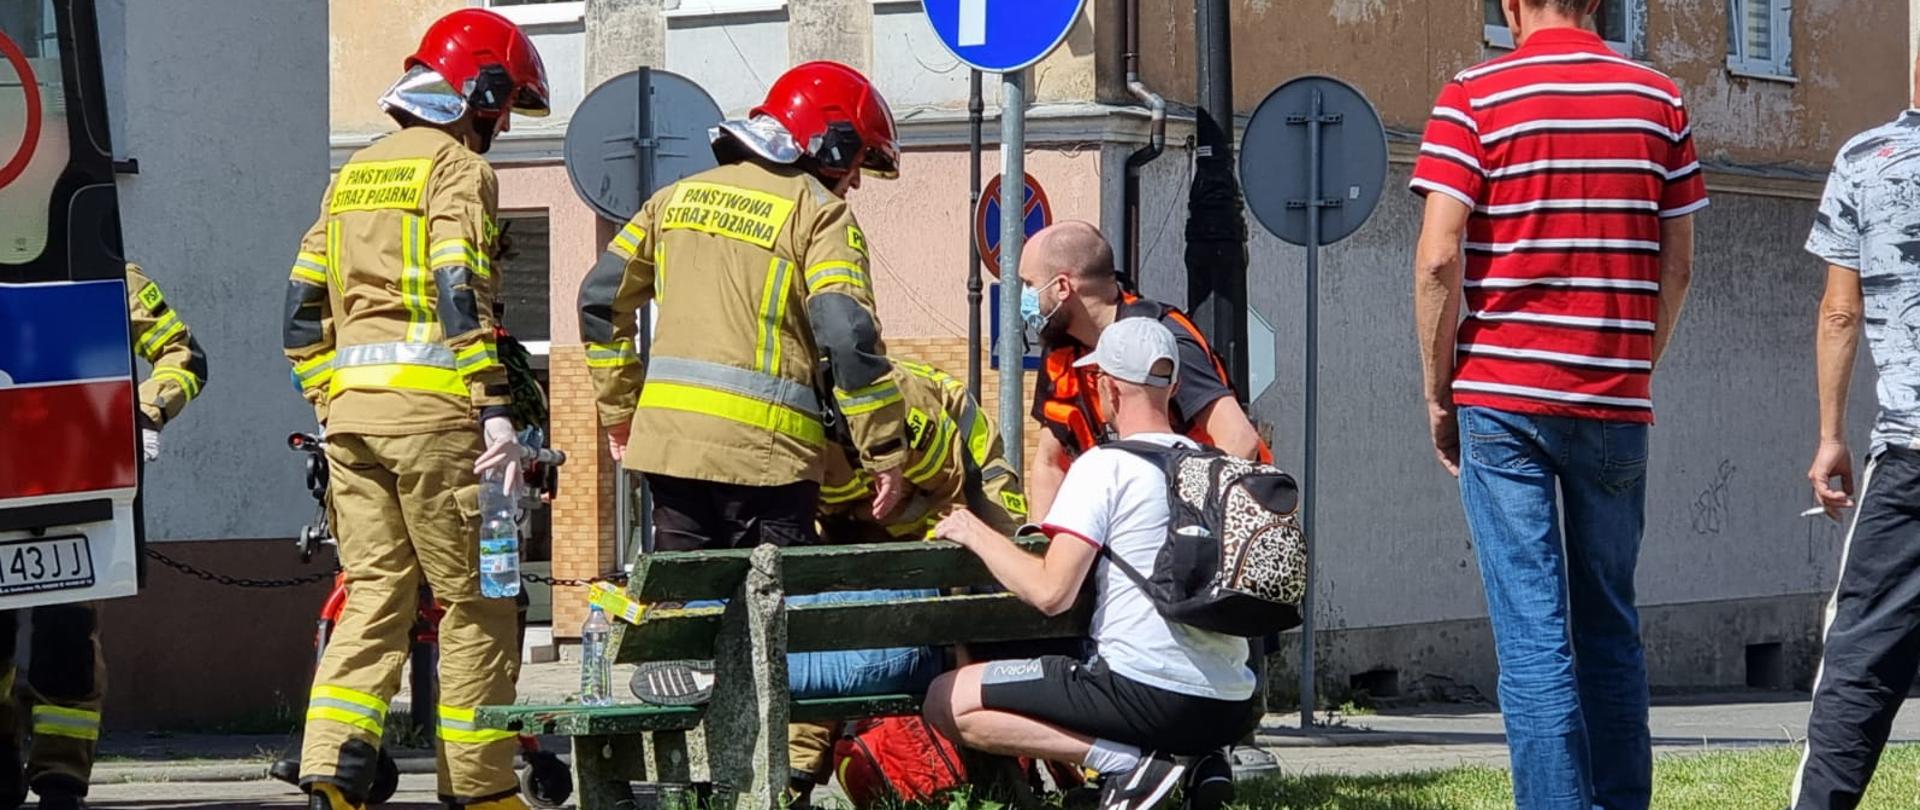 Zdjęcie przedstawia strażaków udzielających pomocy osobie która zasłabła na ławce.Widać tez osoby postronne.